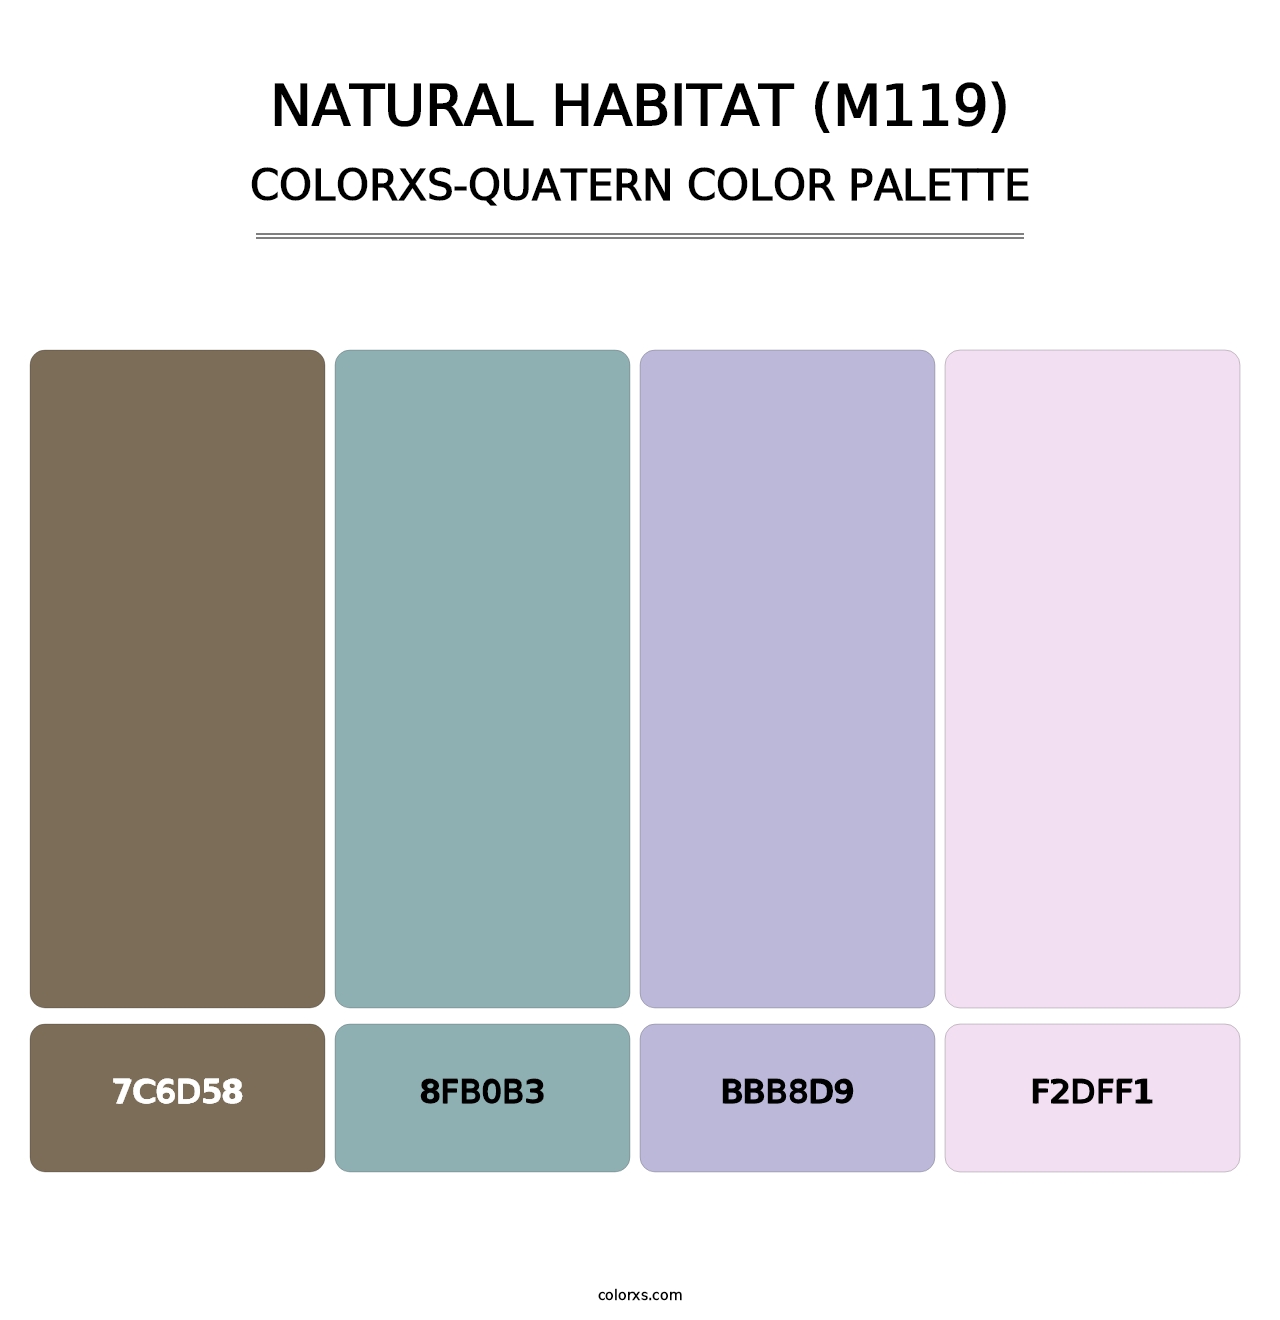 Natural Habitat (M119) - Colorxs Quatern Palette